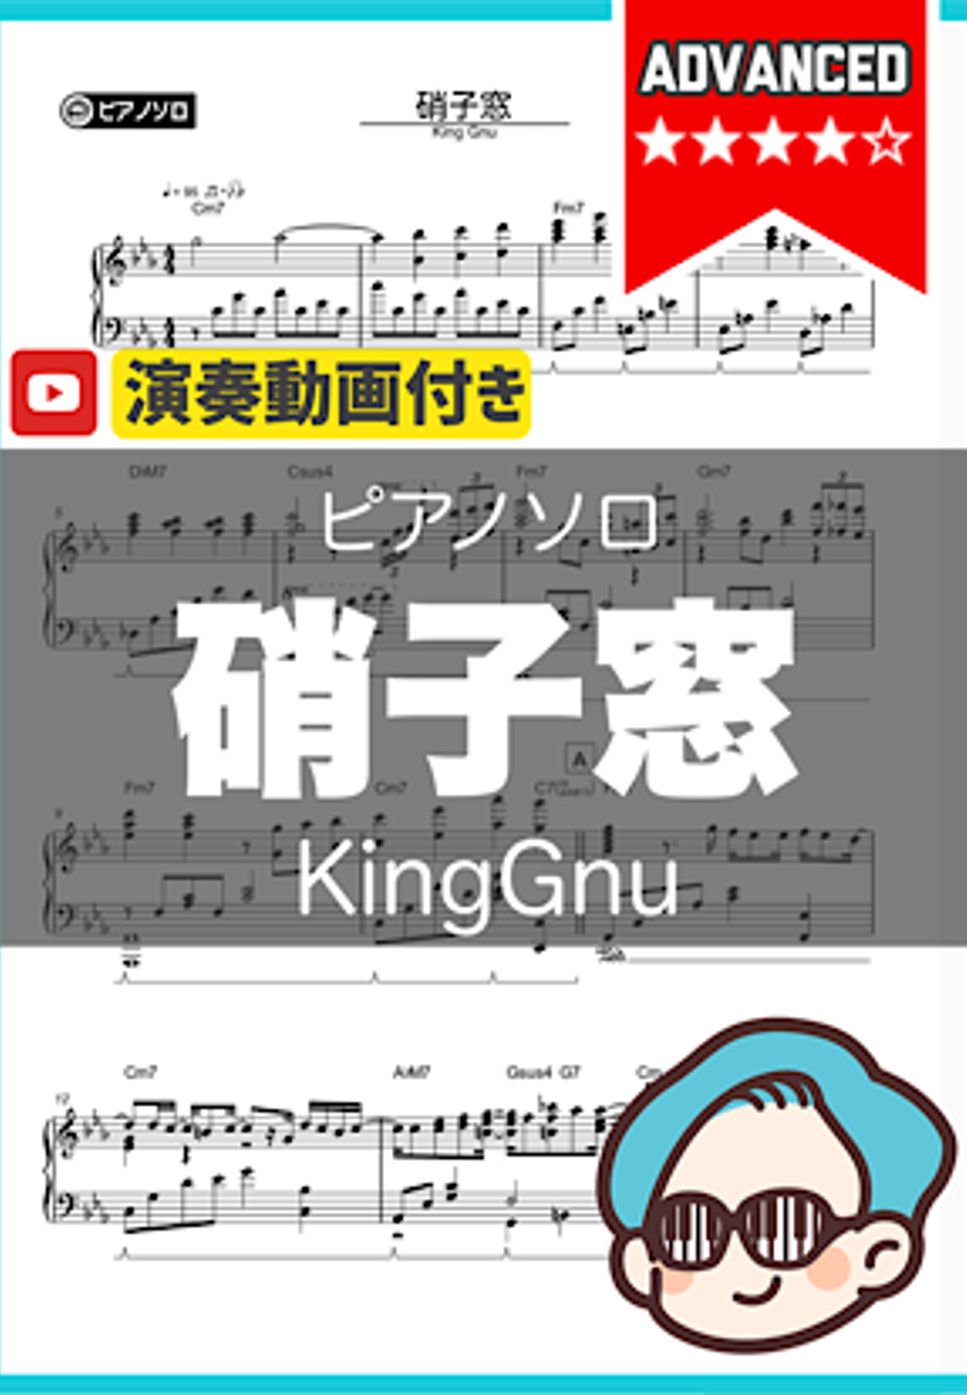 King Gnu - 硝子窓 by シータピアノ